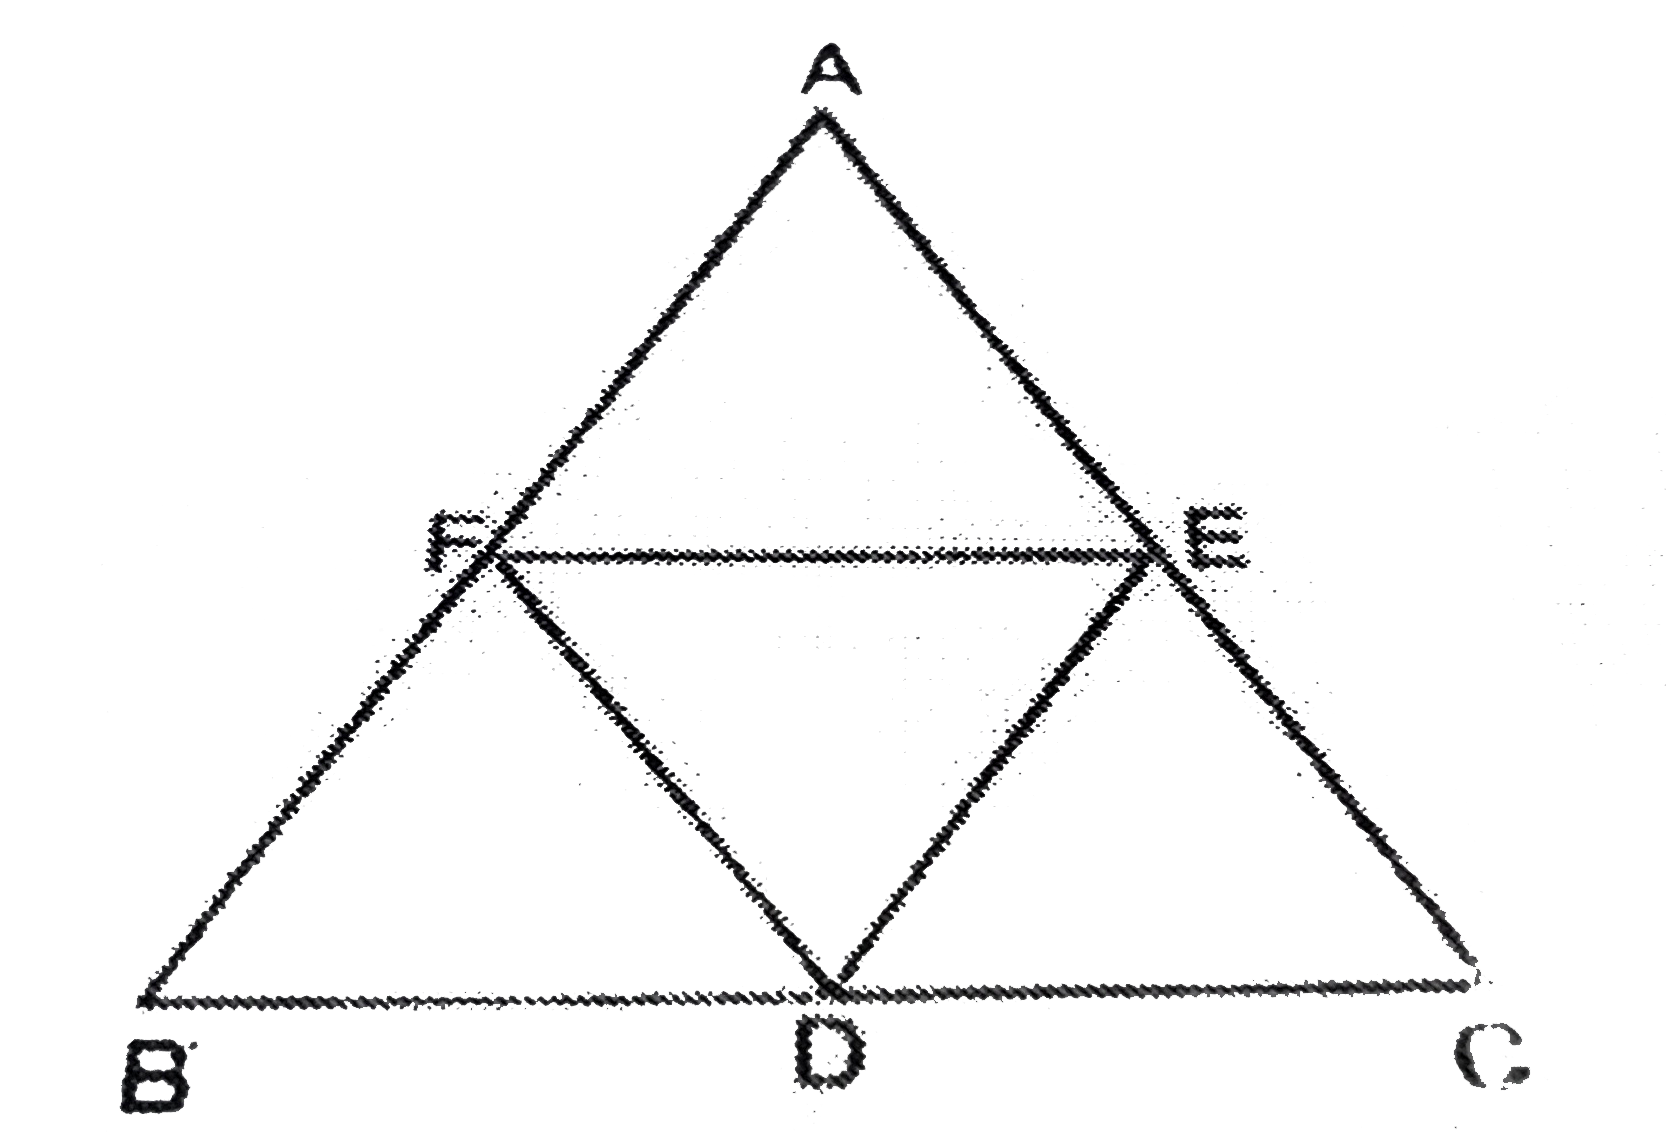 चित्र में समबाहु  DeltaABC की भुजाओं BC, CA और AB के मध्य बिंदु क्रमशः D,E और F है। सिद्ध कीजिए कि DeltaDEF भी एक समबाहु त्रिभुज है।